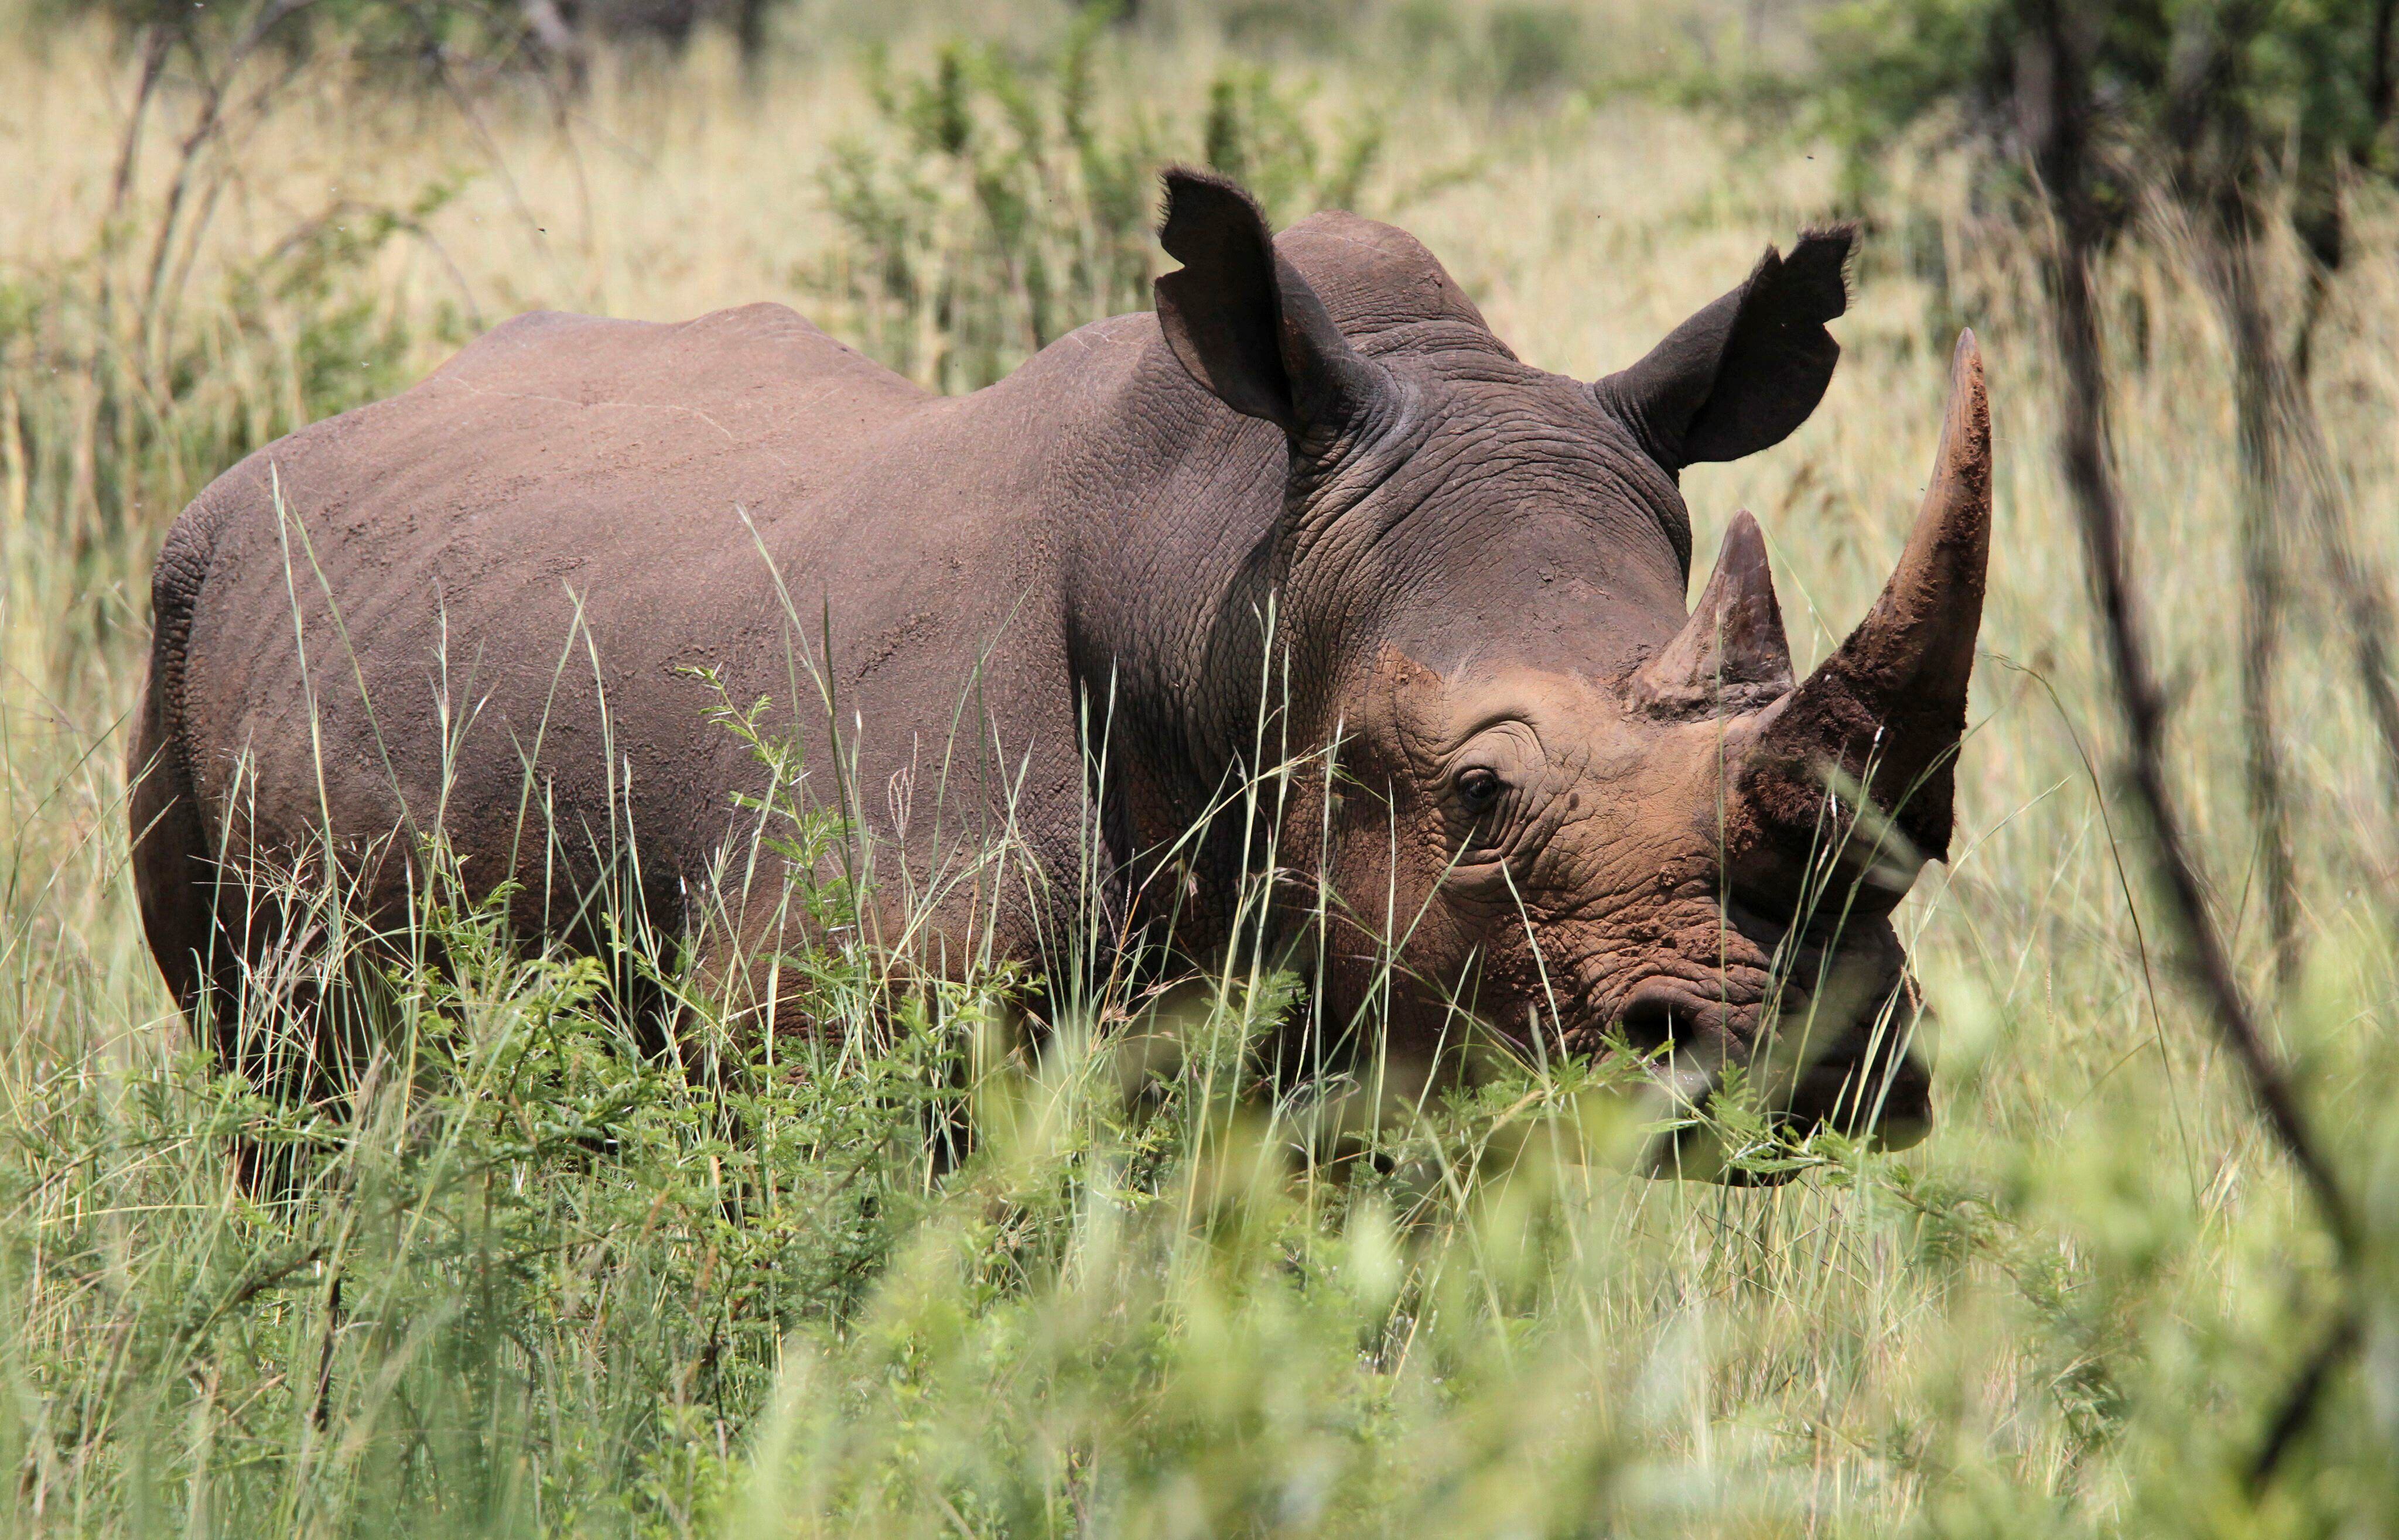 Los rinocerontes son una de las especies que corren peligro de extinción debido a la caza indiscriminada, por eso son protegidos en reservas naturales (EFE/Jon Hrusa)